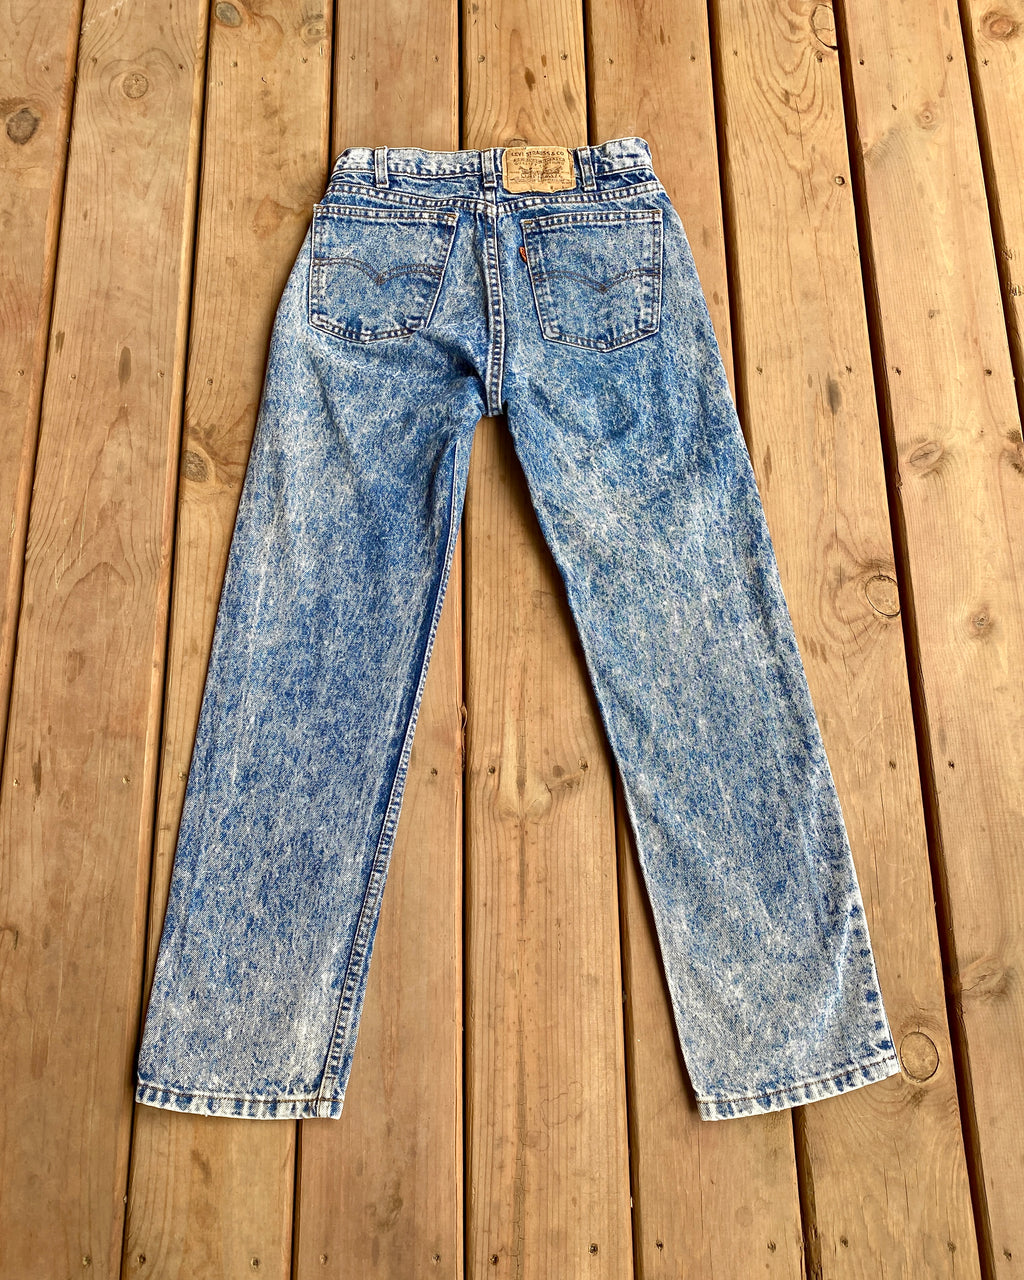 Vintage 1980s Levis 505 Orange Tab Blue Acid Wash Jeans 28 Made in USA